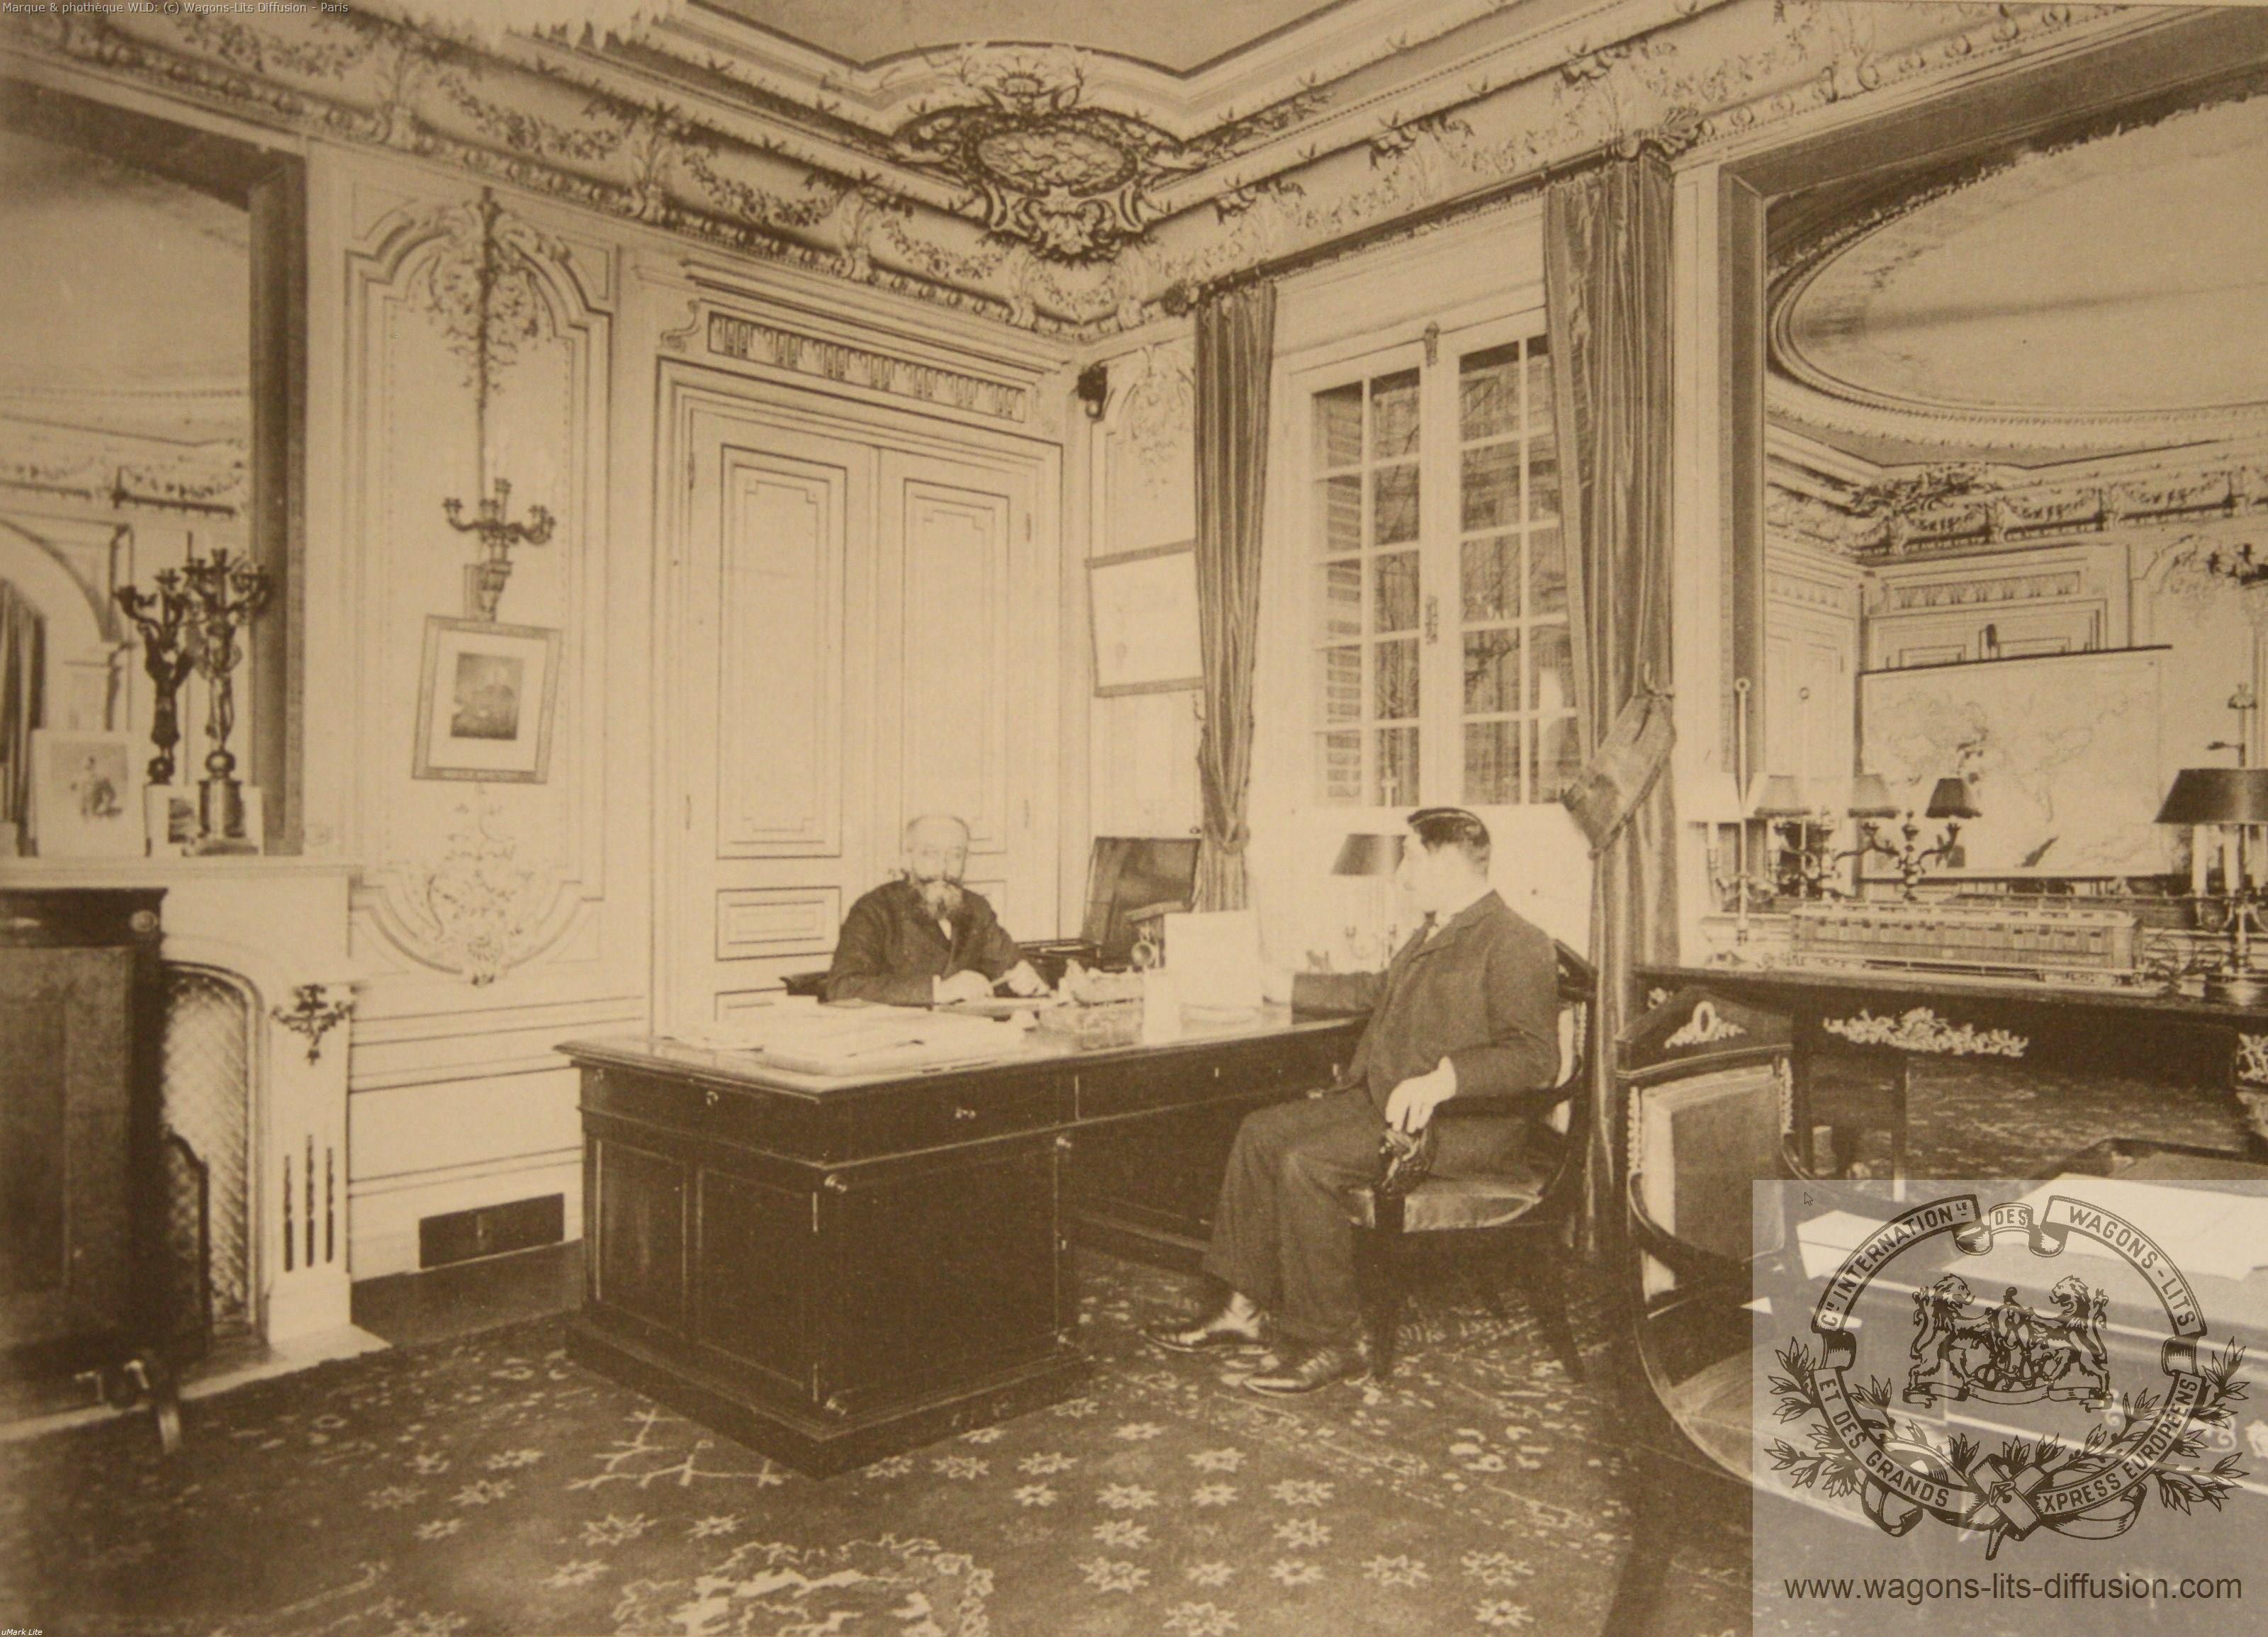 Wl nagelmackers a son bureau bd haussmann vers 1900